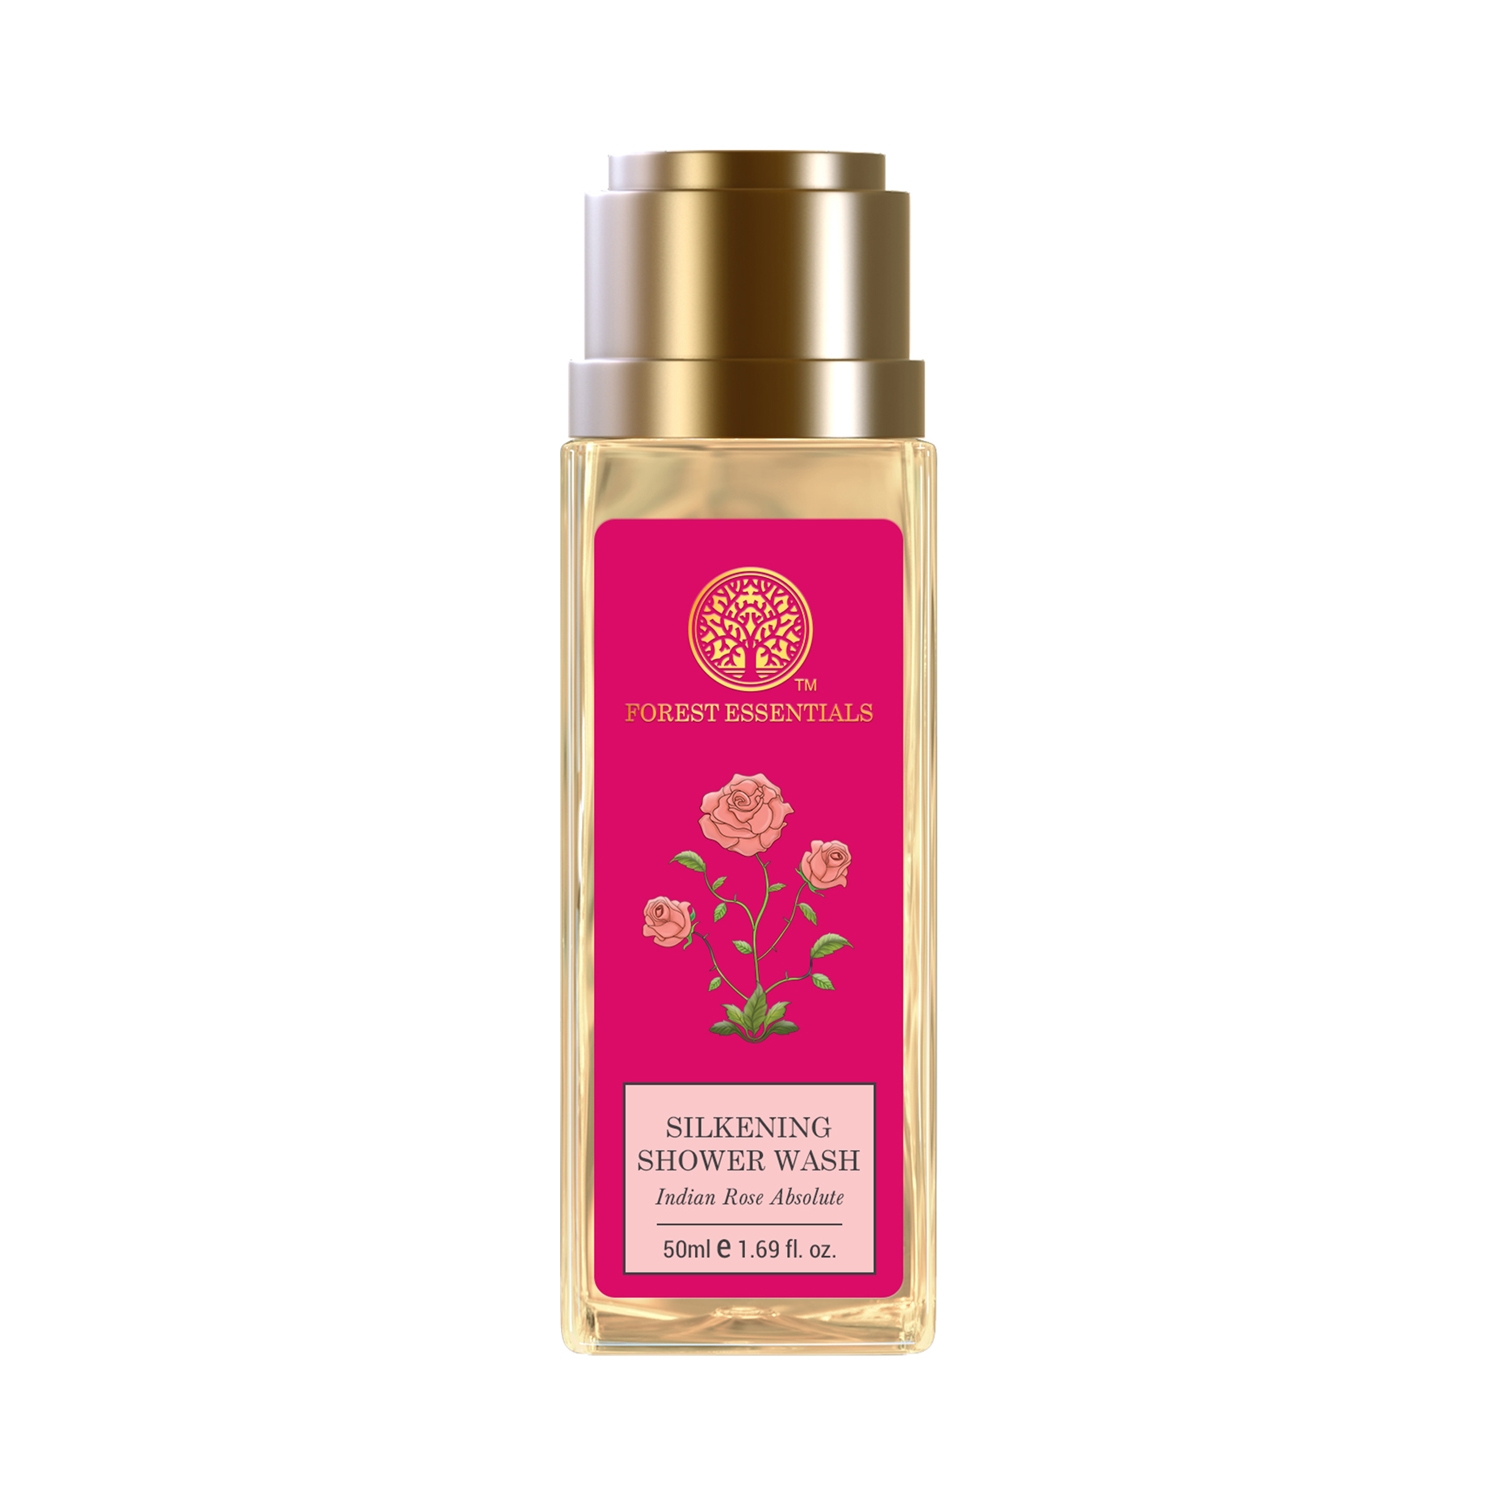 Forest Essentials | Forest Essentials Indian Rose Absolute Silkening Shower Wash (50ml)